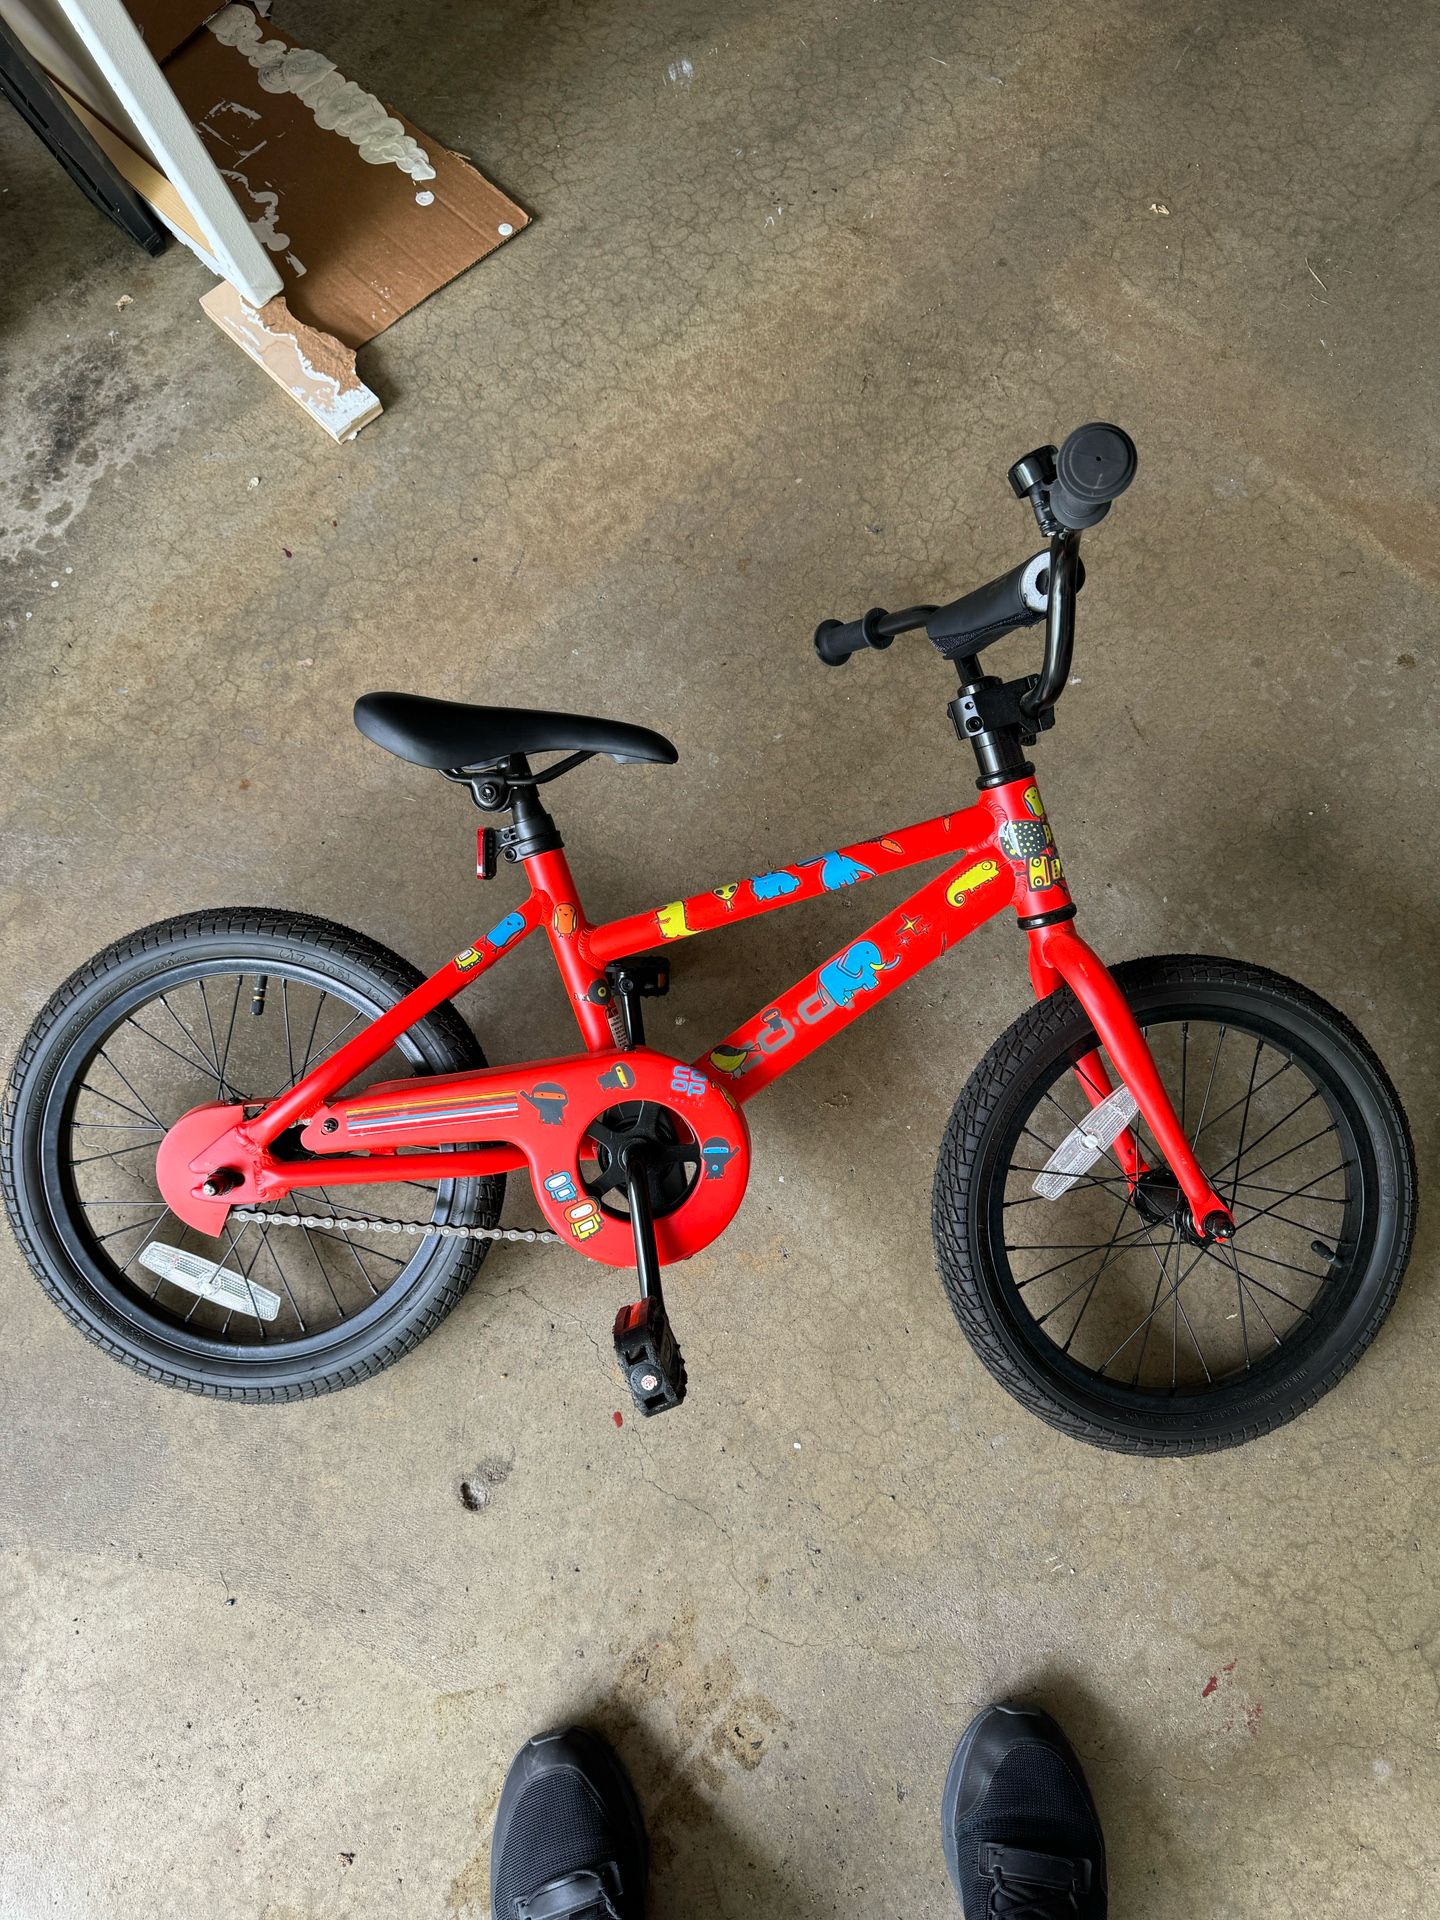 REI CO OP 16” Kids Bike